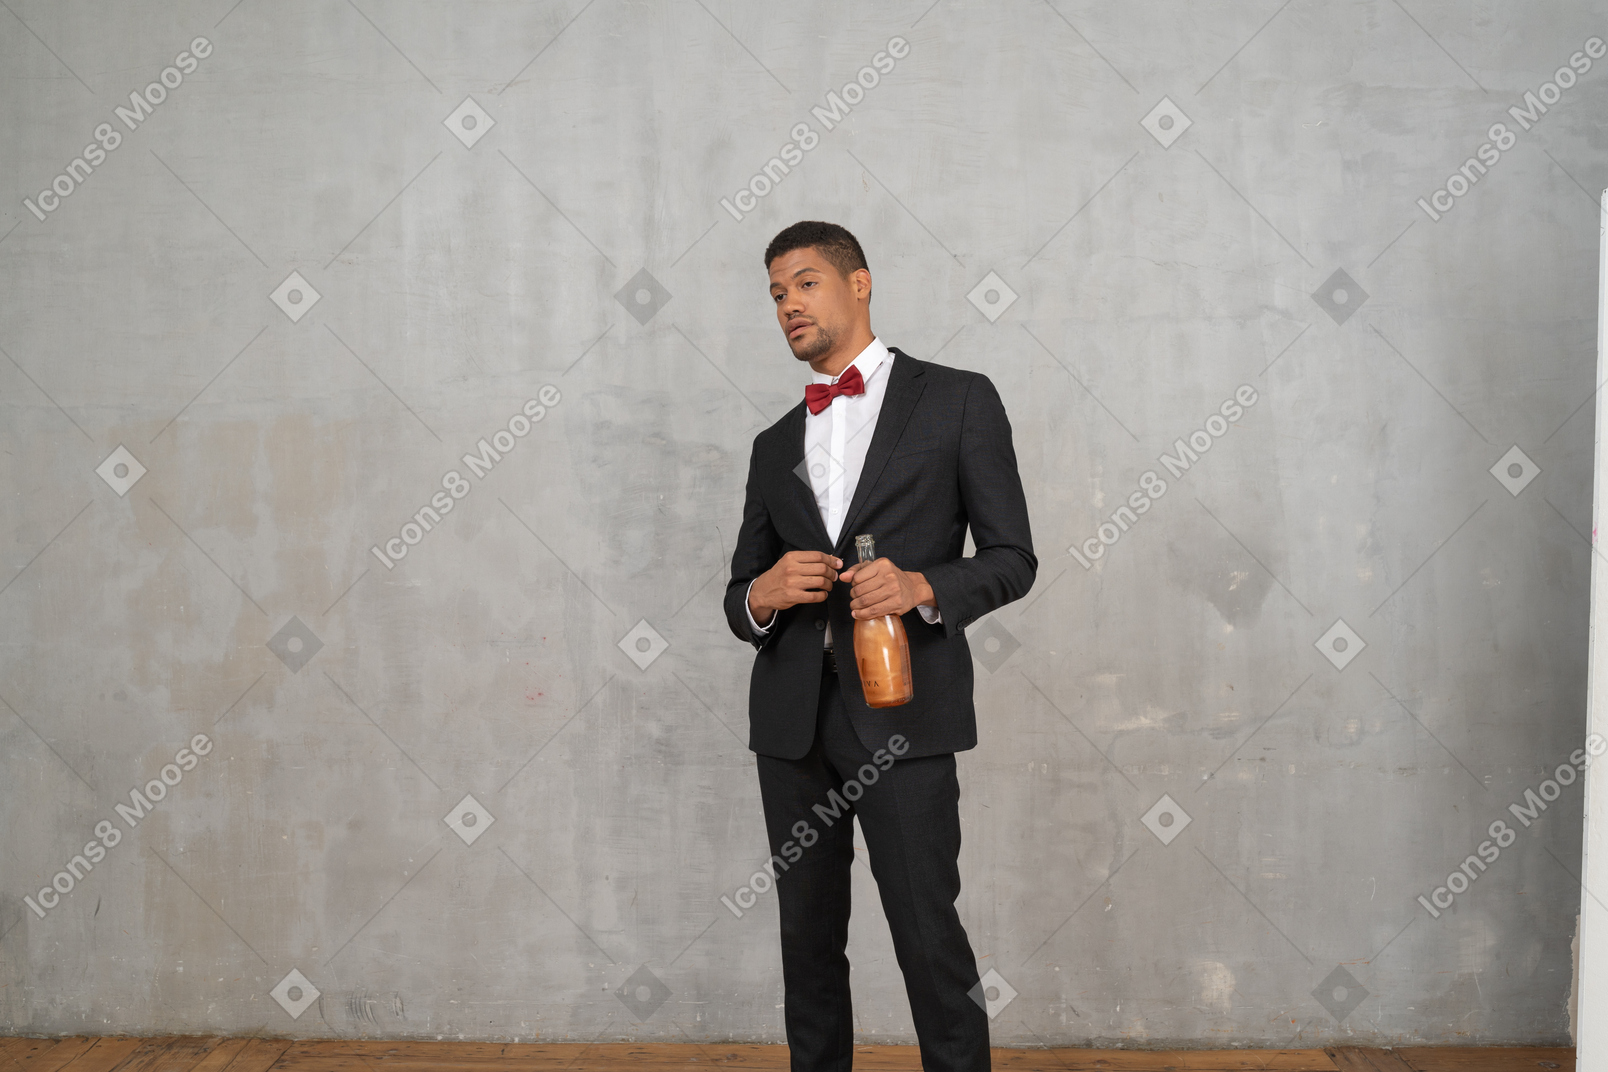 Homem de terno e gravata borboleta em pé com uma garrafa na mão